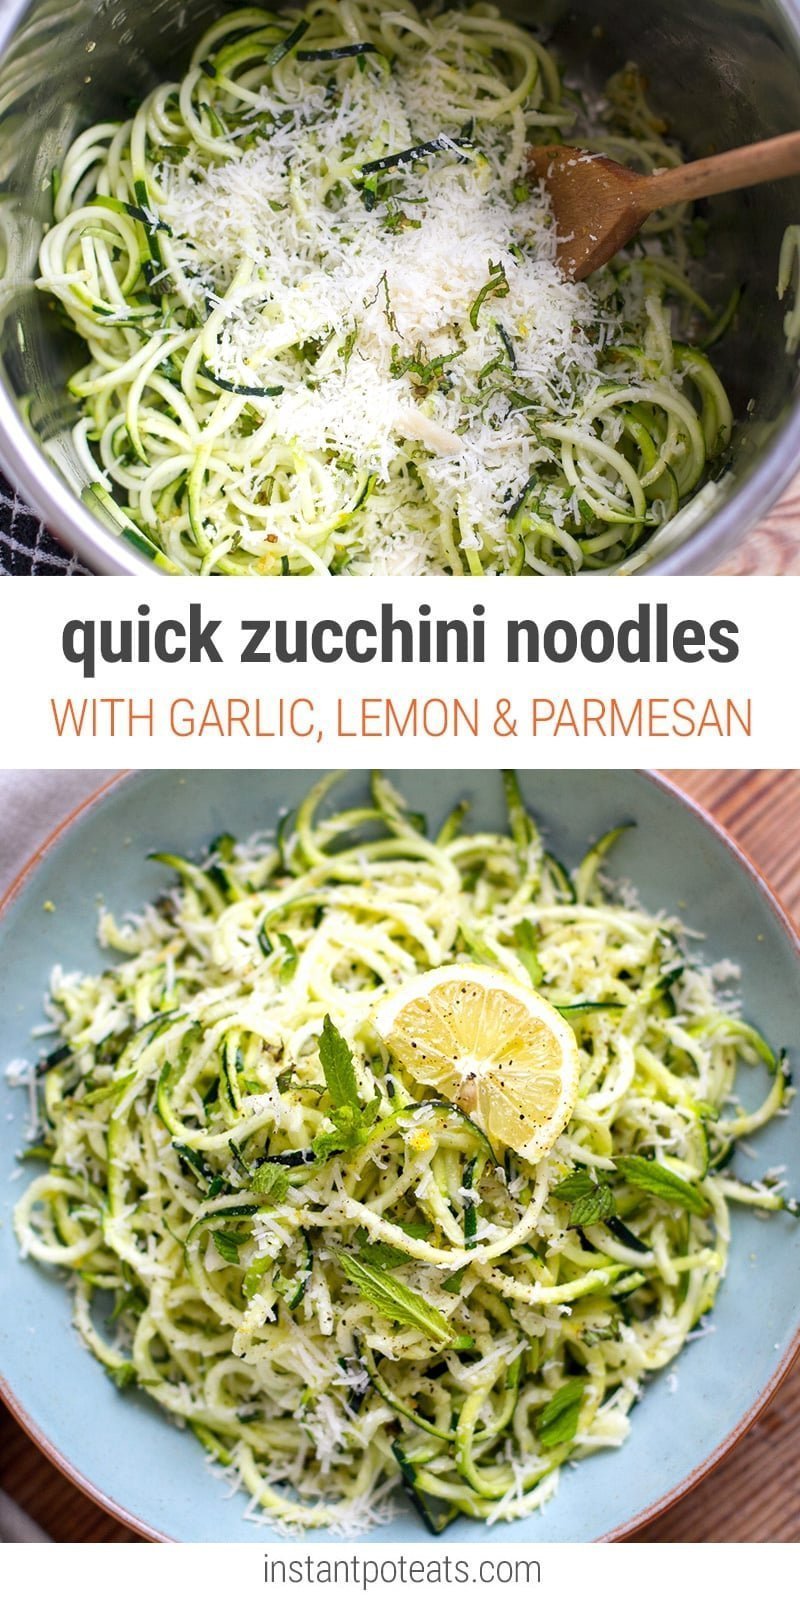 10-Minute Zucchini Noodles With Garlic, Lemon & Parmesan